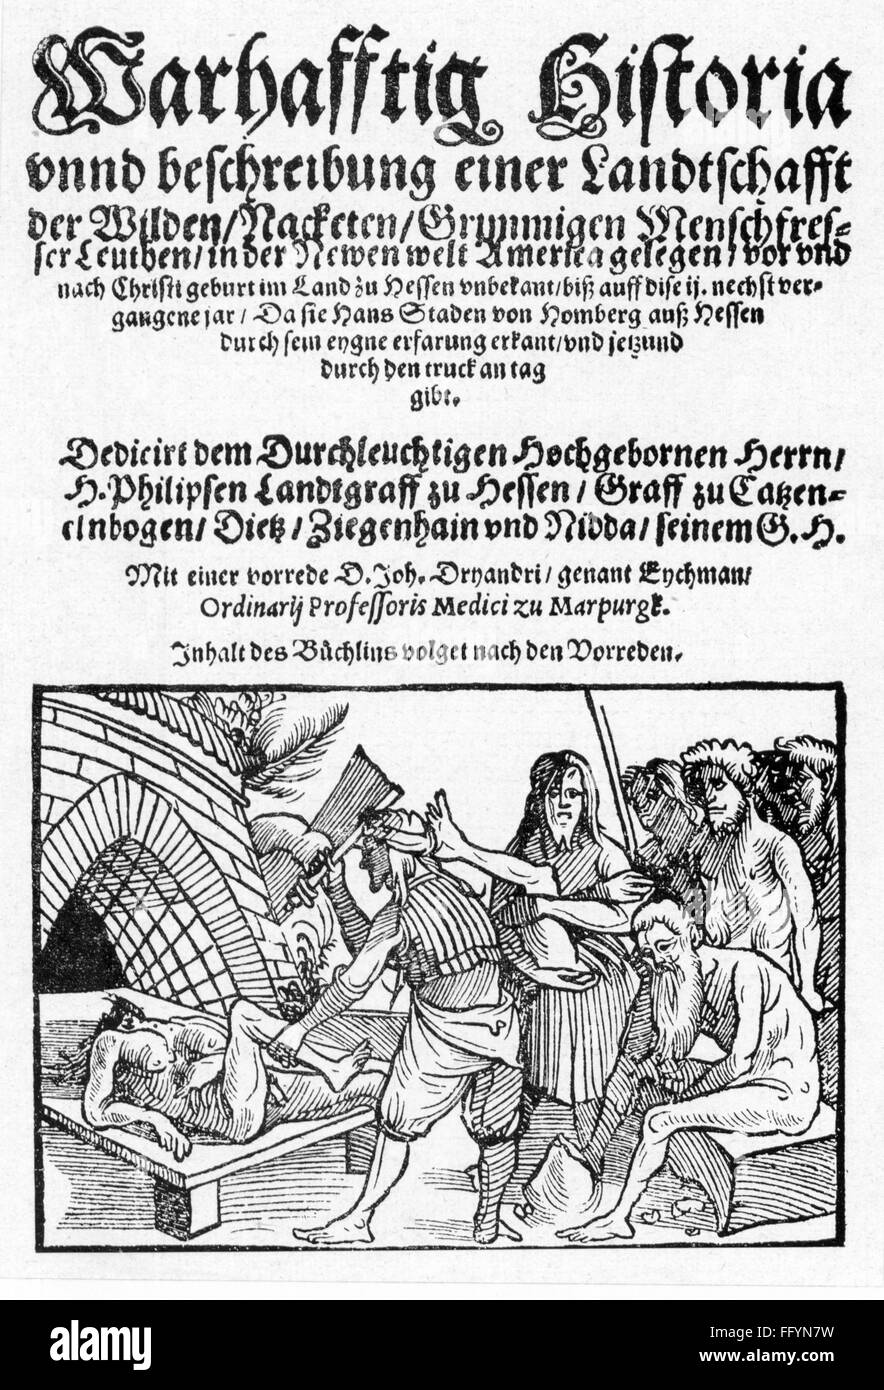 Literatura, títulos y páginas de título, 'Warhaftige Historia' (cuenta veraz) von Hans Staden (alrededor de 1525 - 1576), woodcut, Frankfurt, 1557, Derechos adicionales-Clearences-no disponible Foto de stock